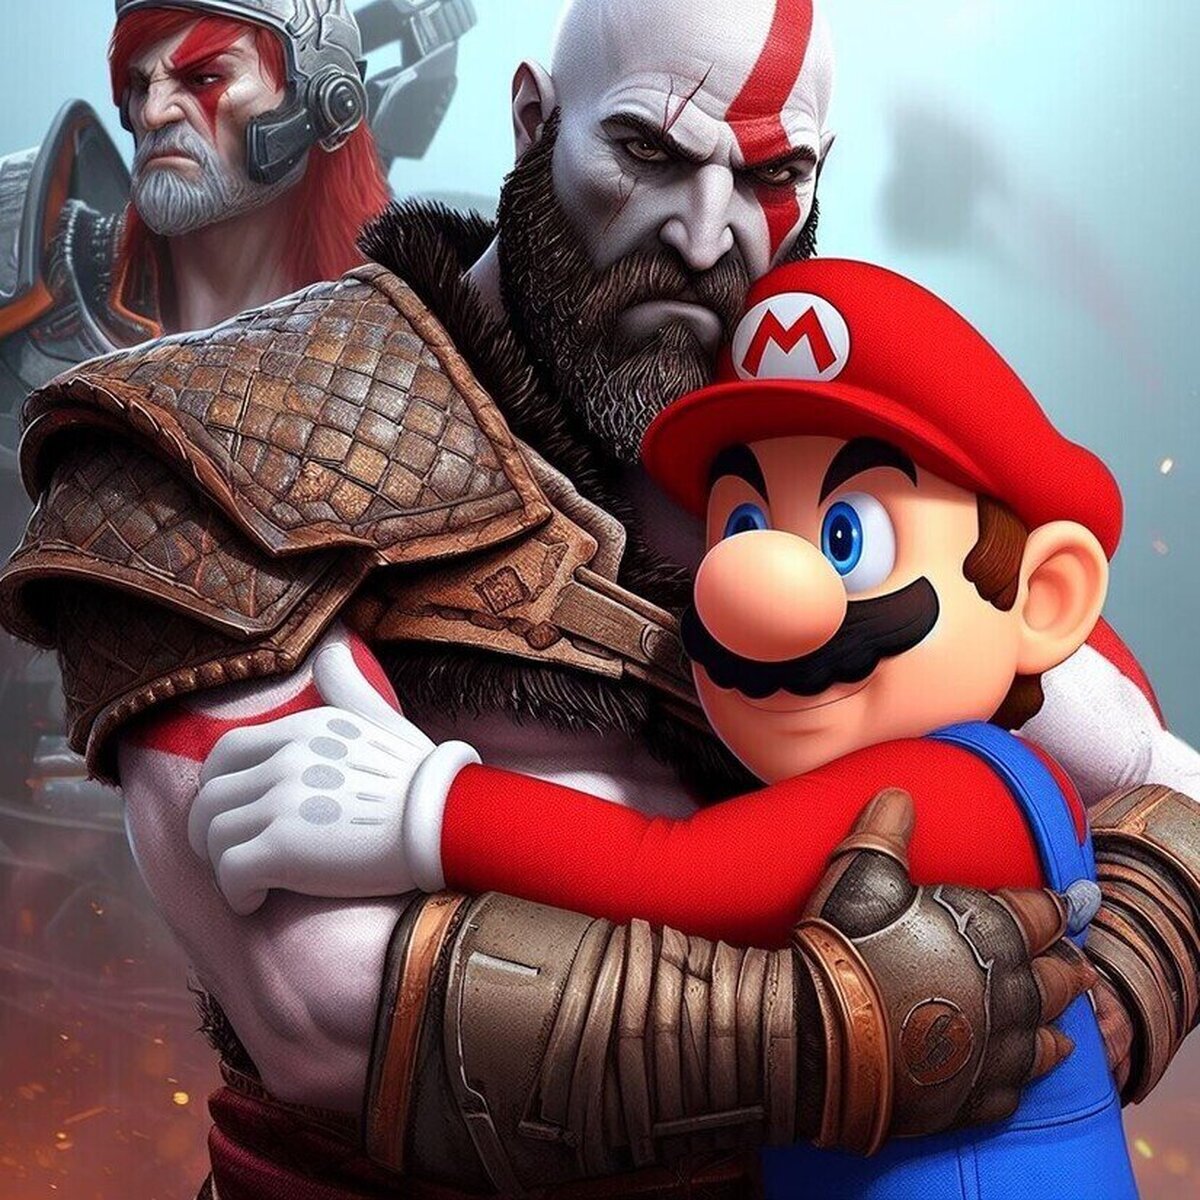 Aquí podemos ver a un monstruo abrazando a Kratos